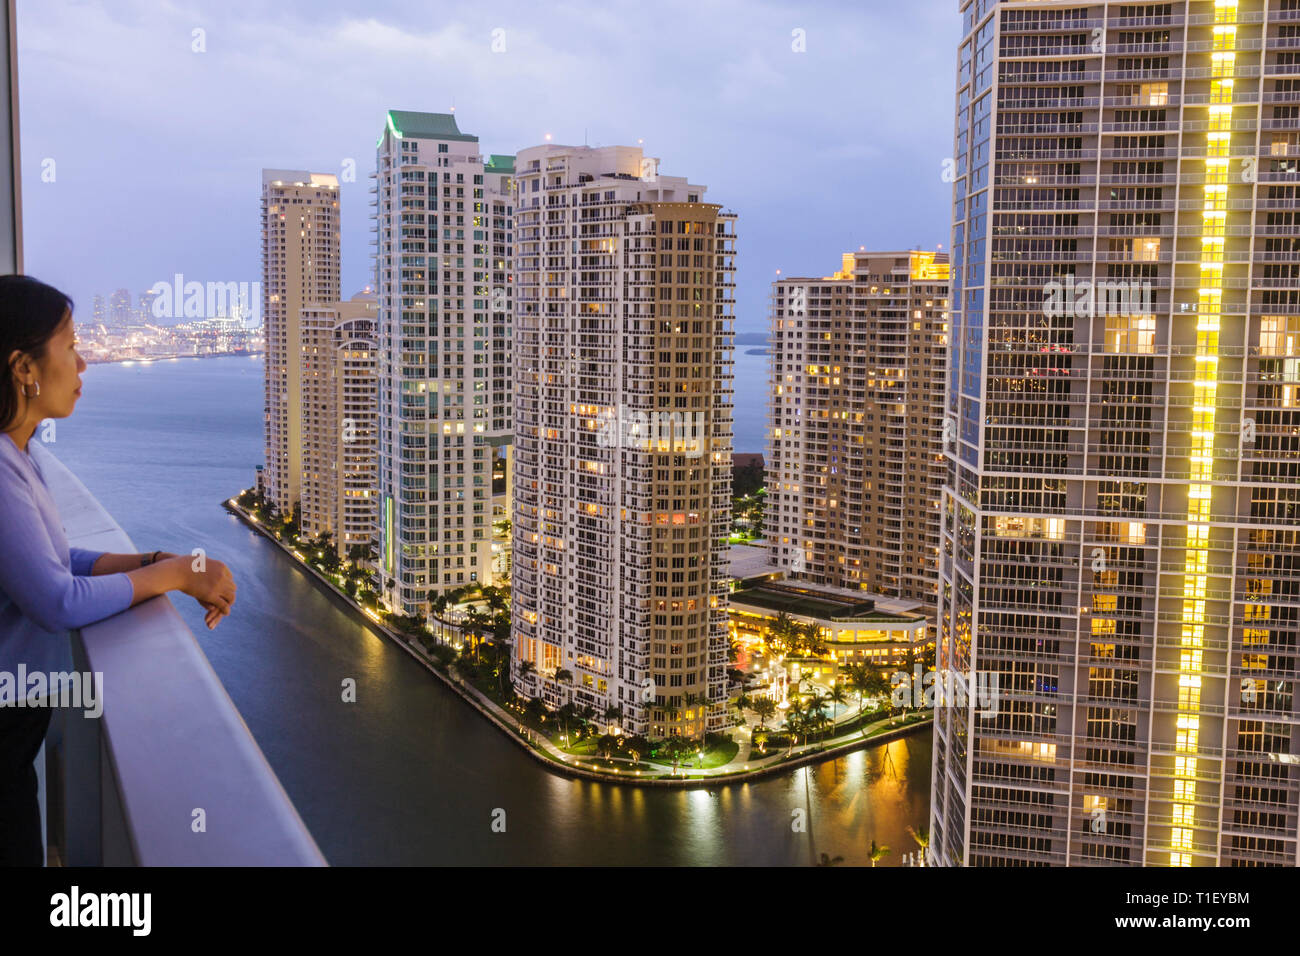 Miami Florida, Brickell Key, Blick von Epic, Hotel, Gebäude, Skyline der Stadt, Wohnanlagen, Wolkenkratzer, Hochhäuser Wolkenkratzer Gebäude CI Stockfoto